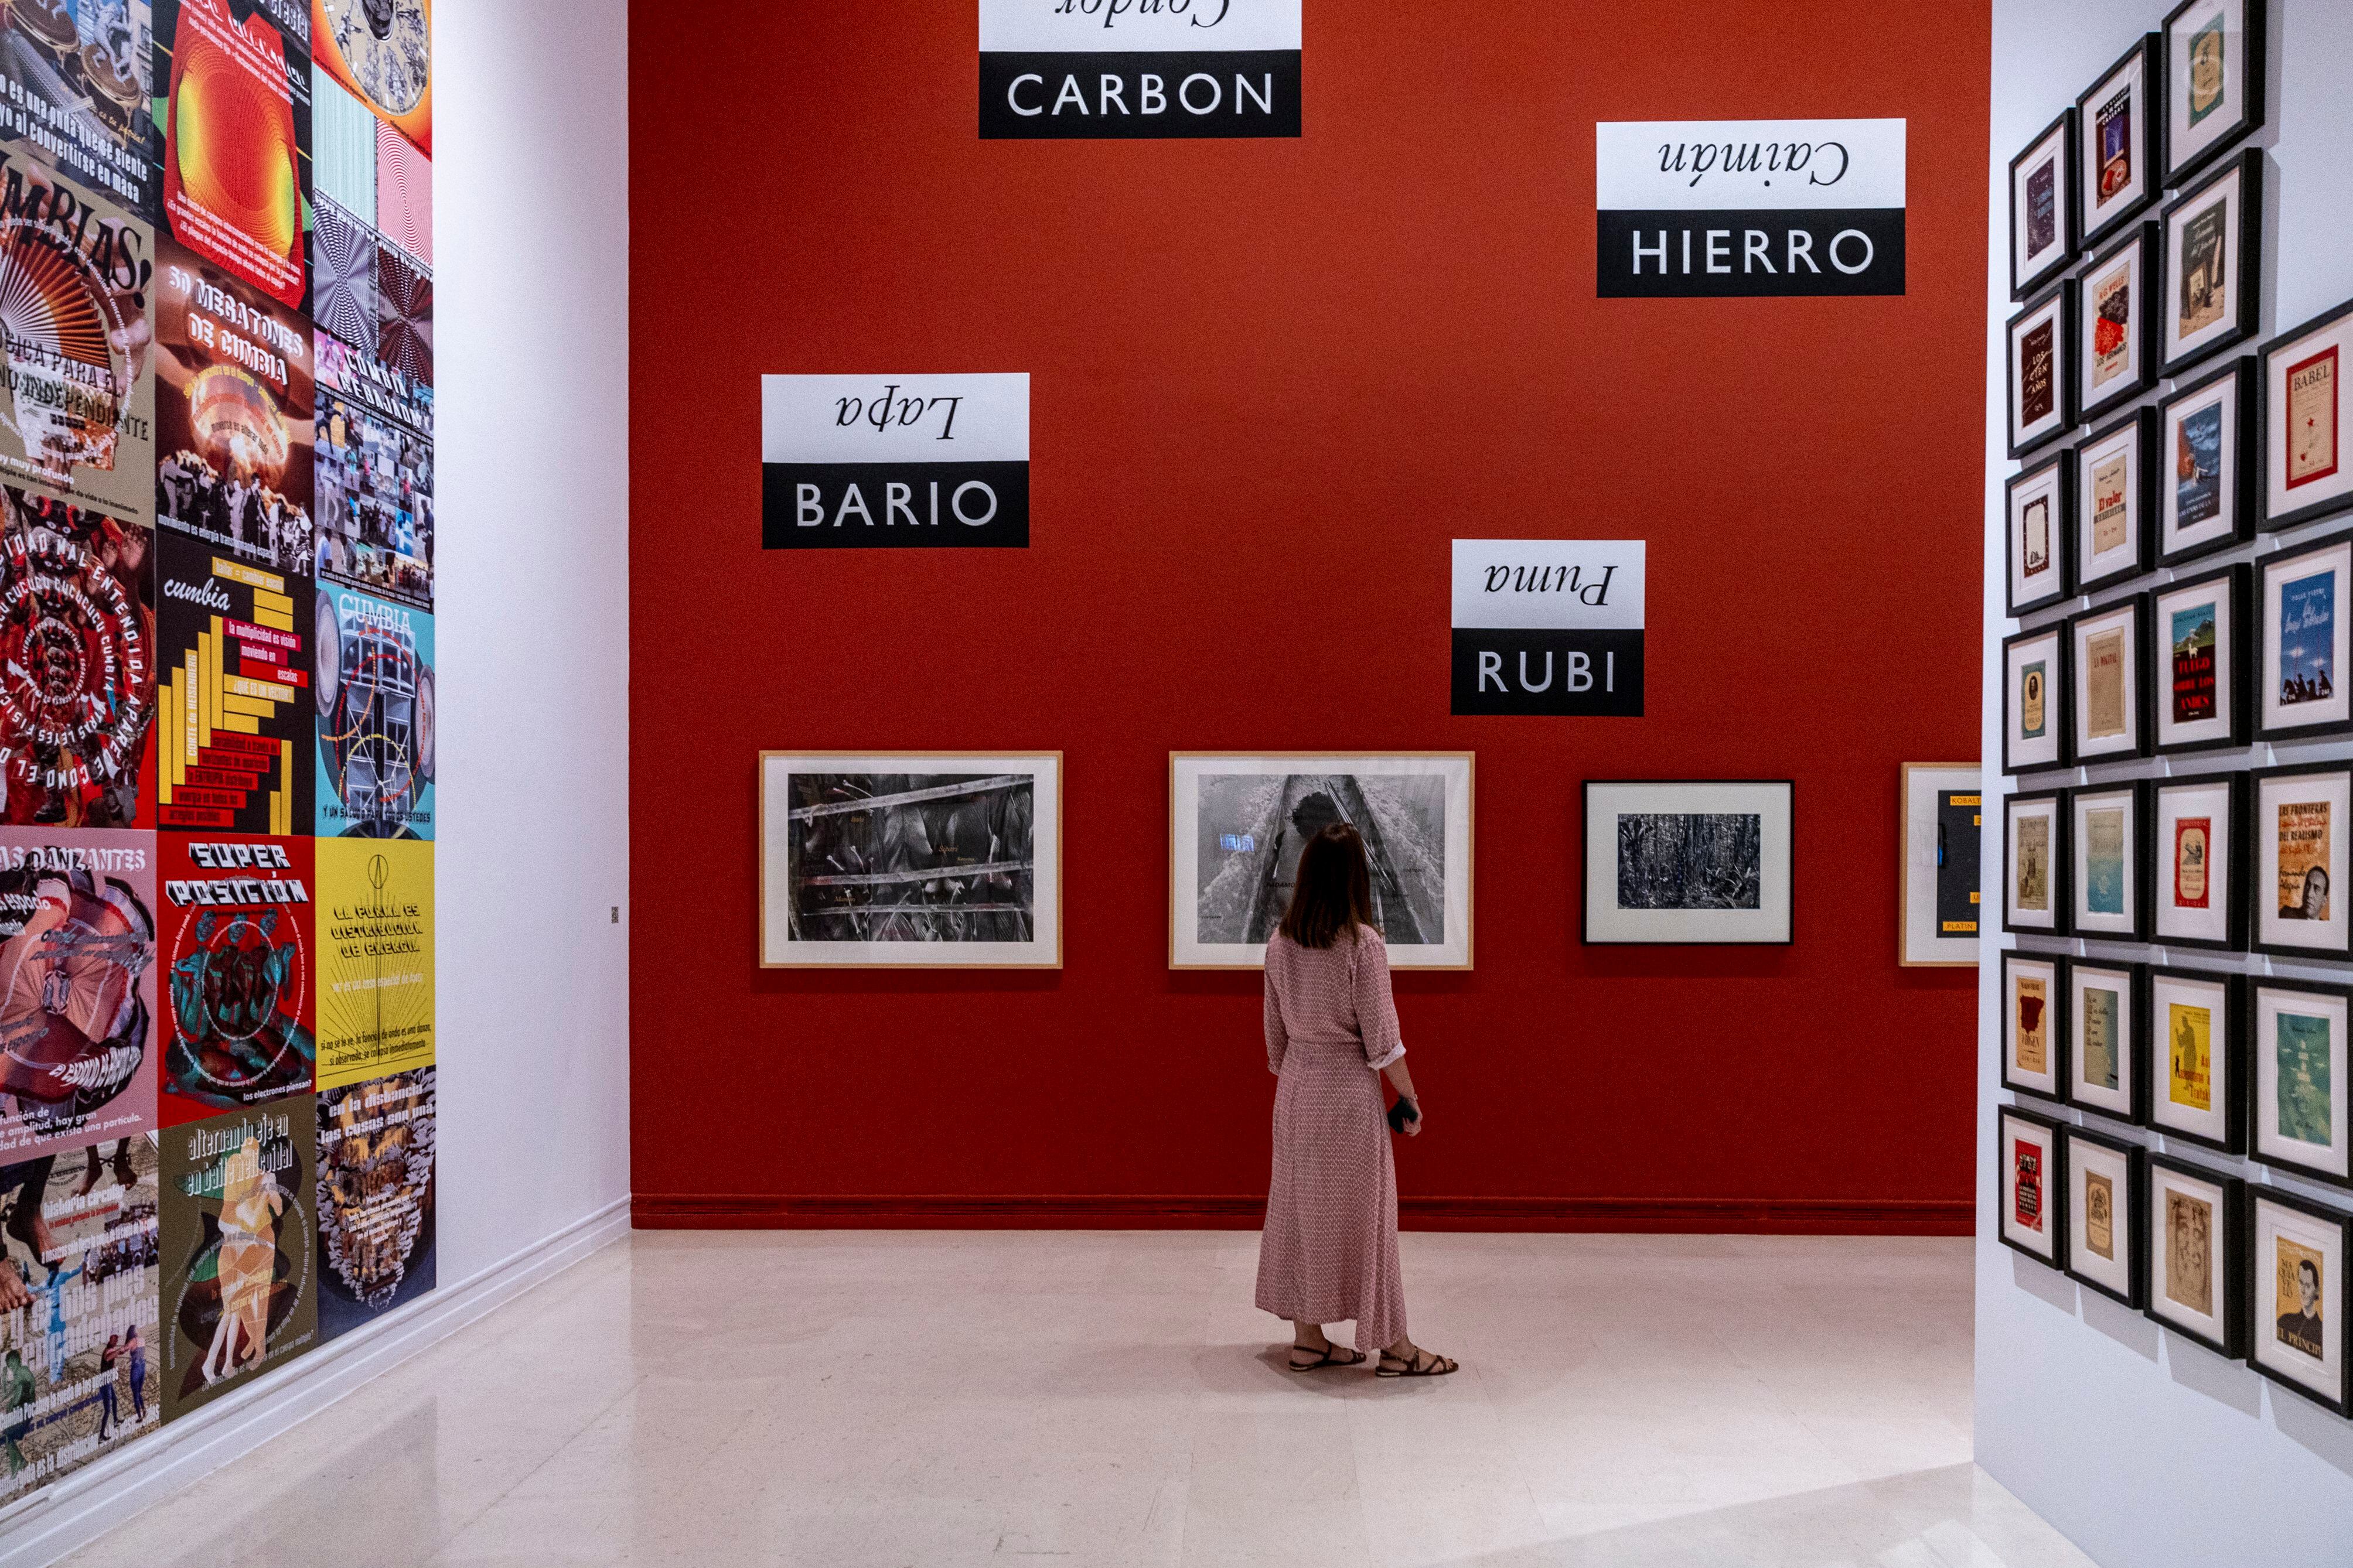 El IVAM de València ha reunido 1.500 obras de 300 artistas, entre los que figuran Picasso, Josep Renau, Warhol, Cindy Sherman, Varvara Stepanova o Miró, para rastrear el imaginario cultural de lo popular, que acompaña con música de El niño de Elche.